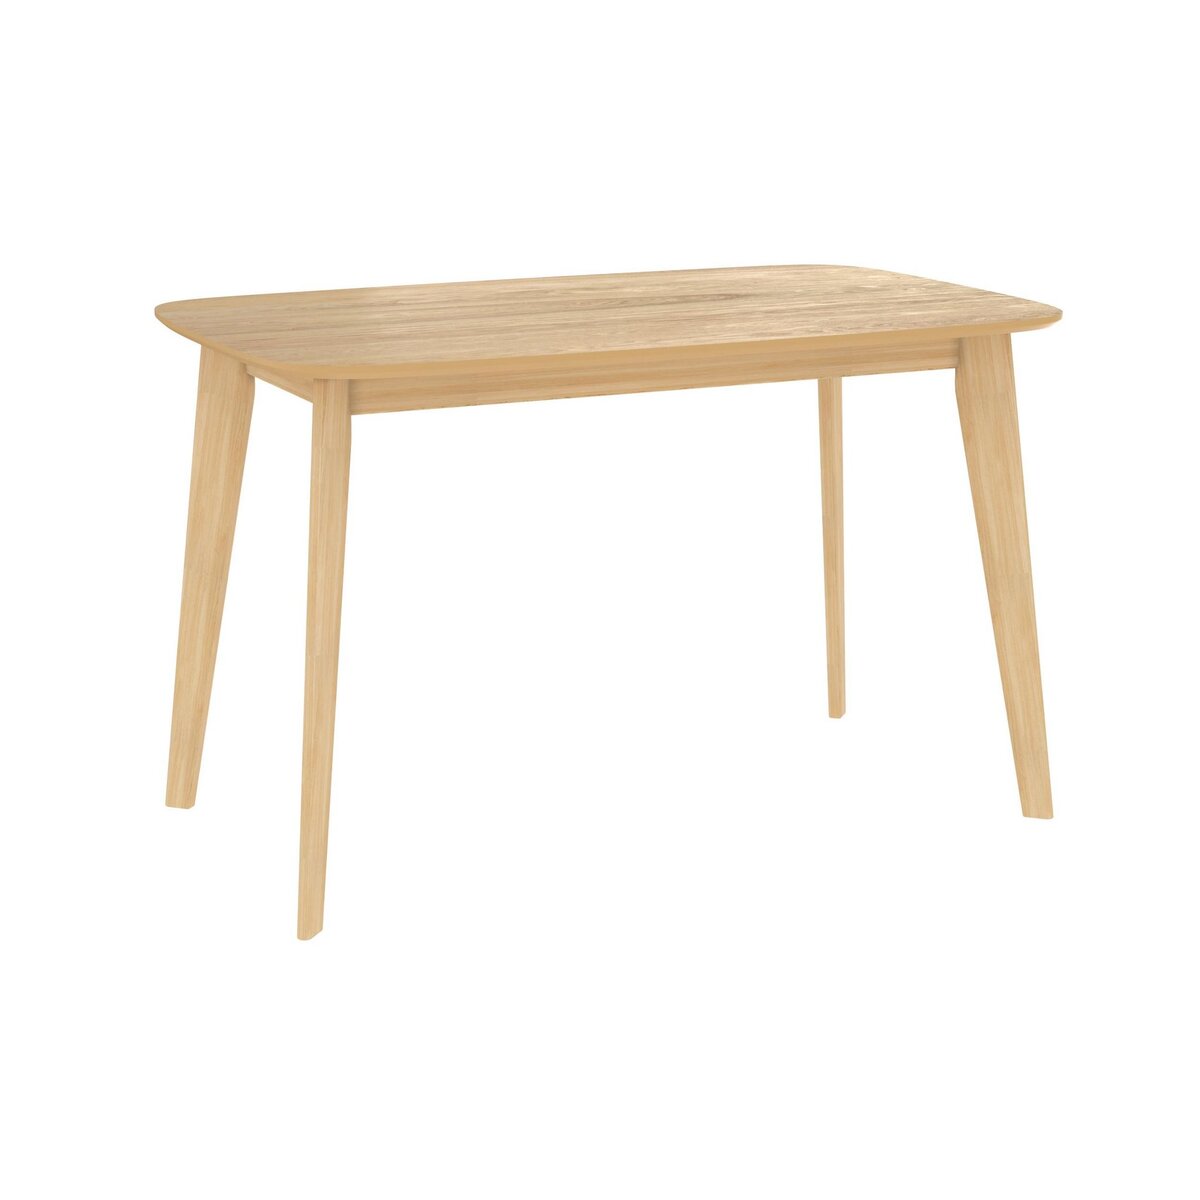 Rendez vous déco Table rectangulaire Oman 4 personnes en bois